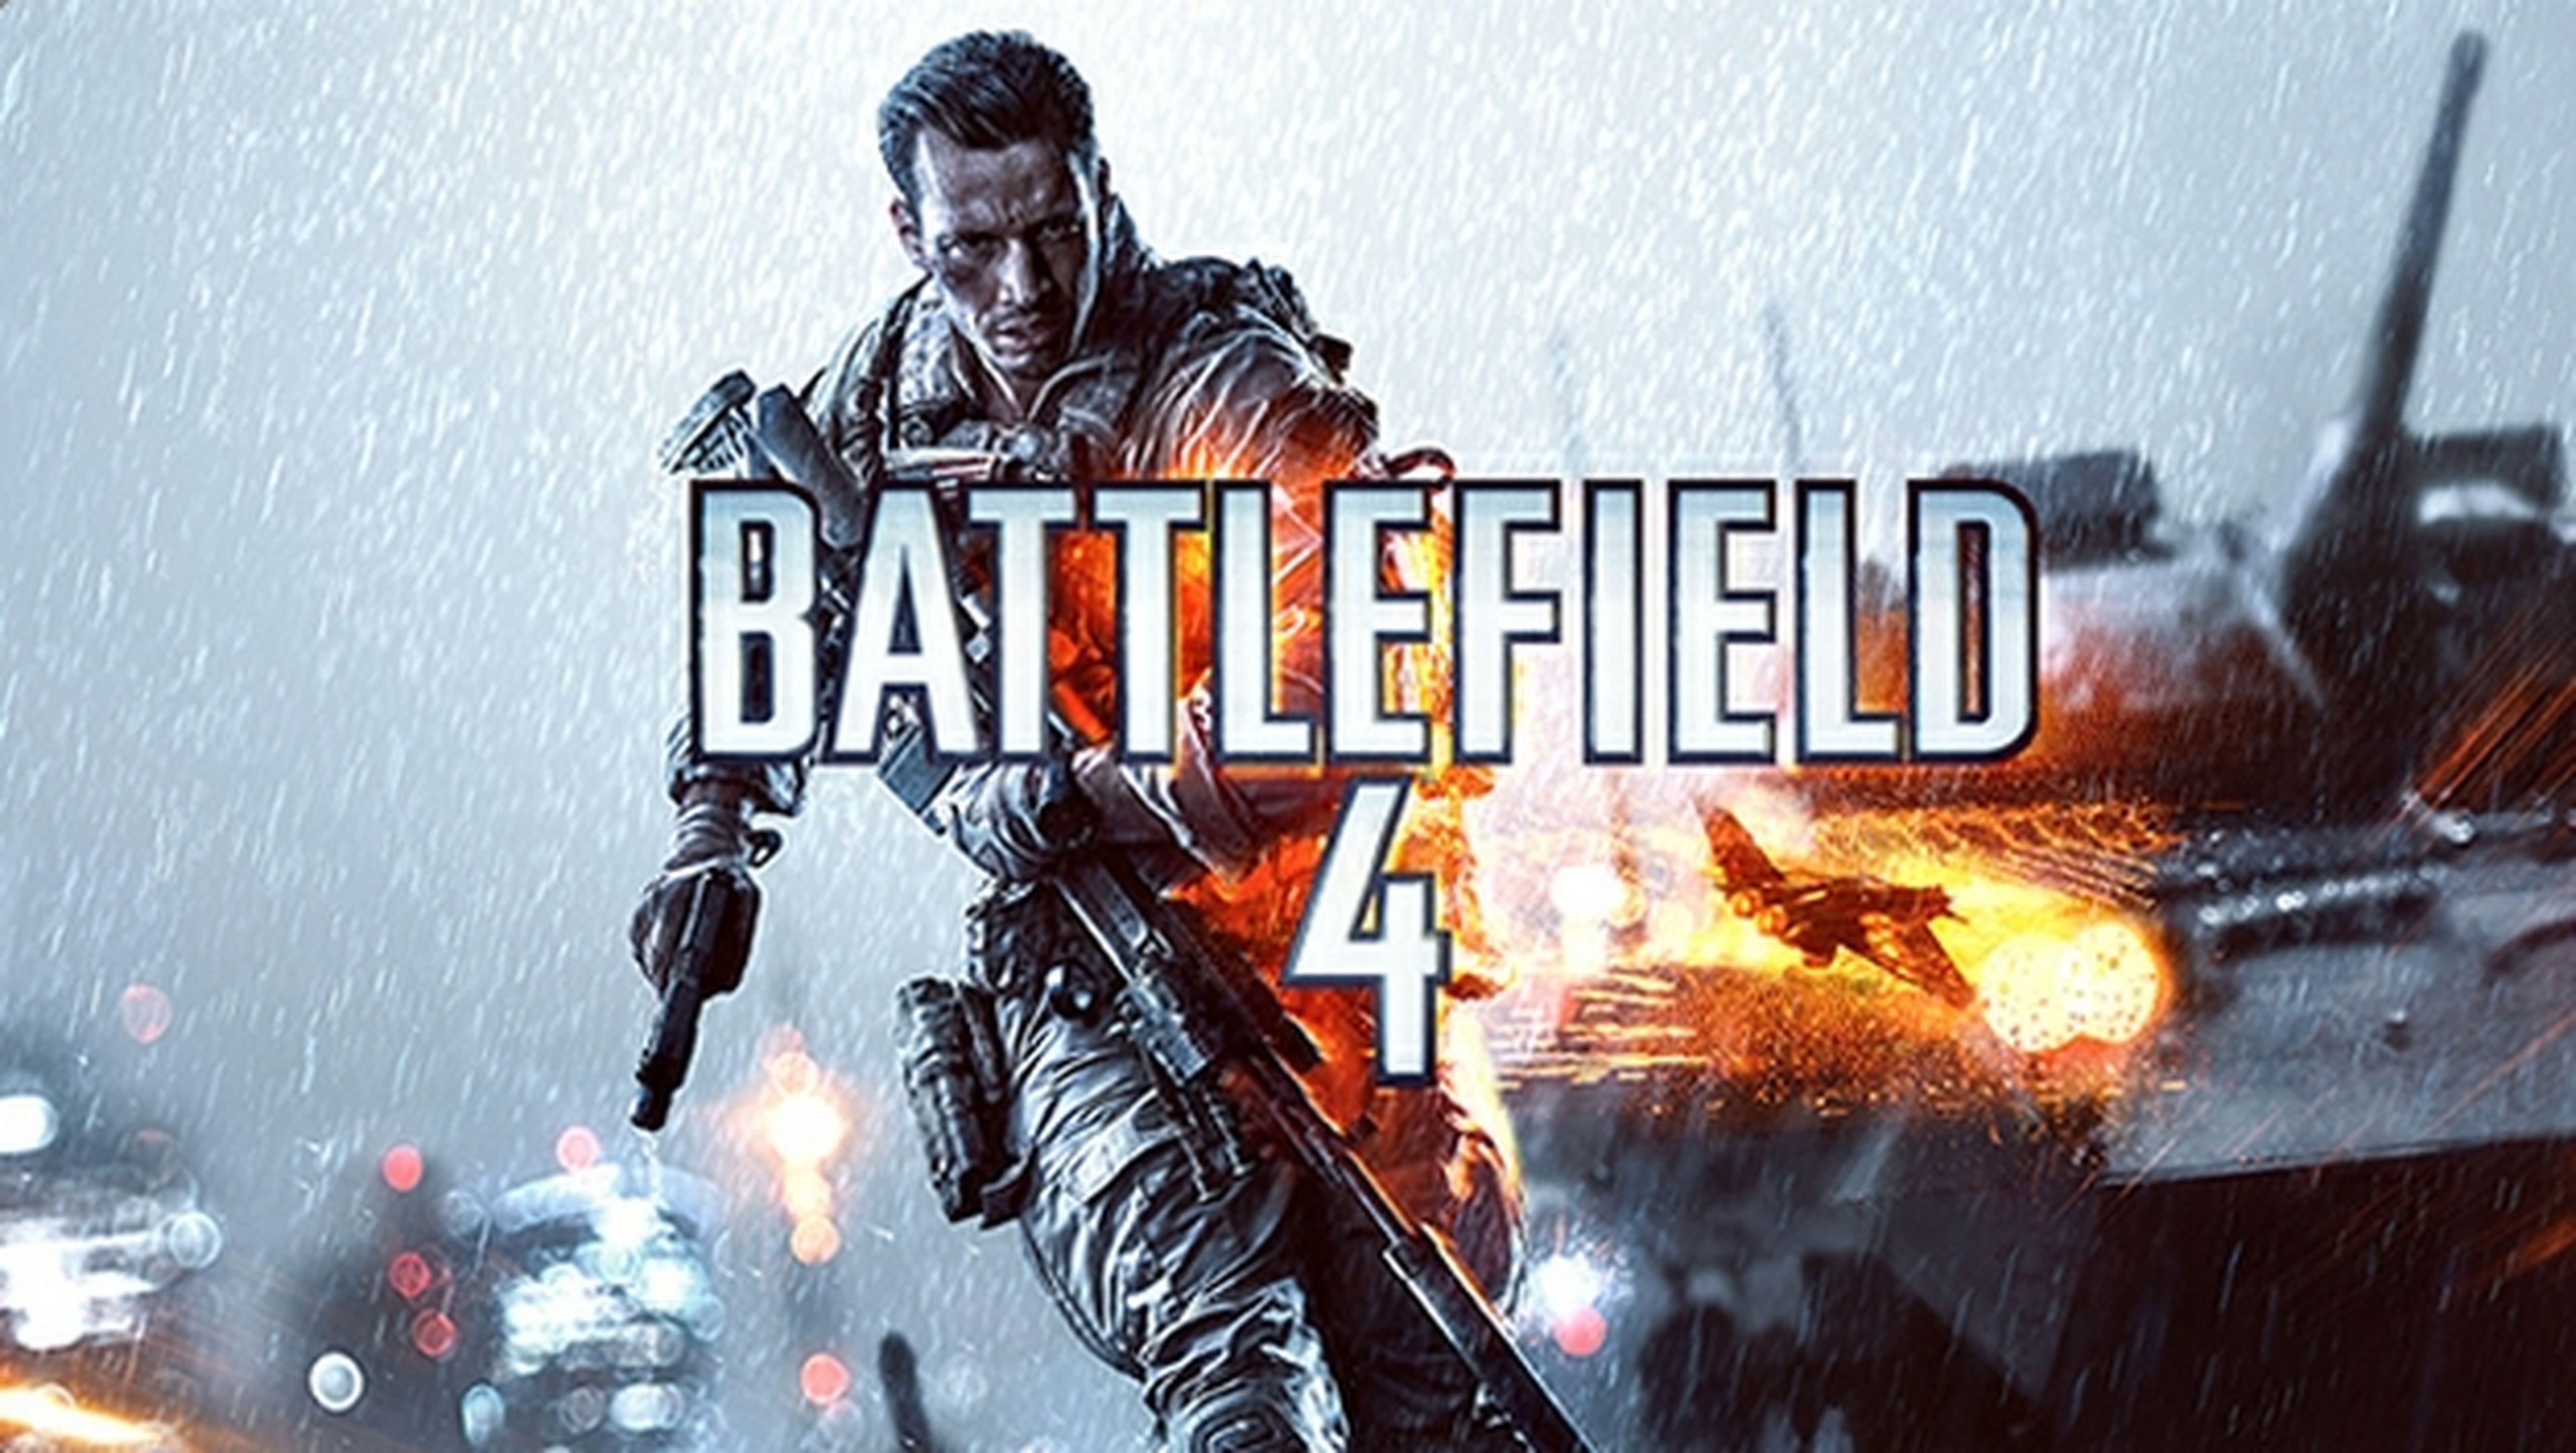 Juega gratis a Battlefield 4 para PC durante una semana, en Origin.